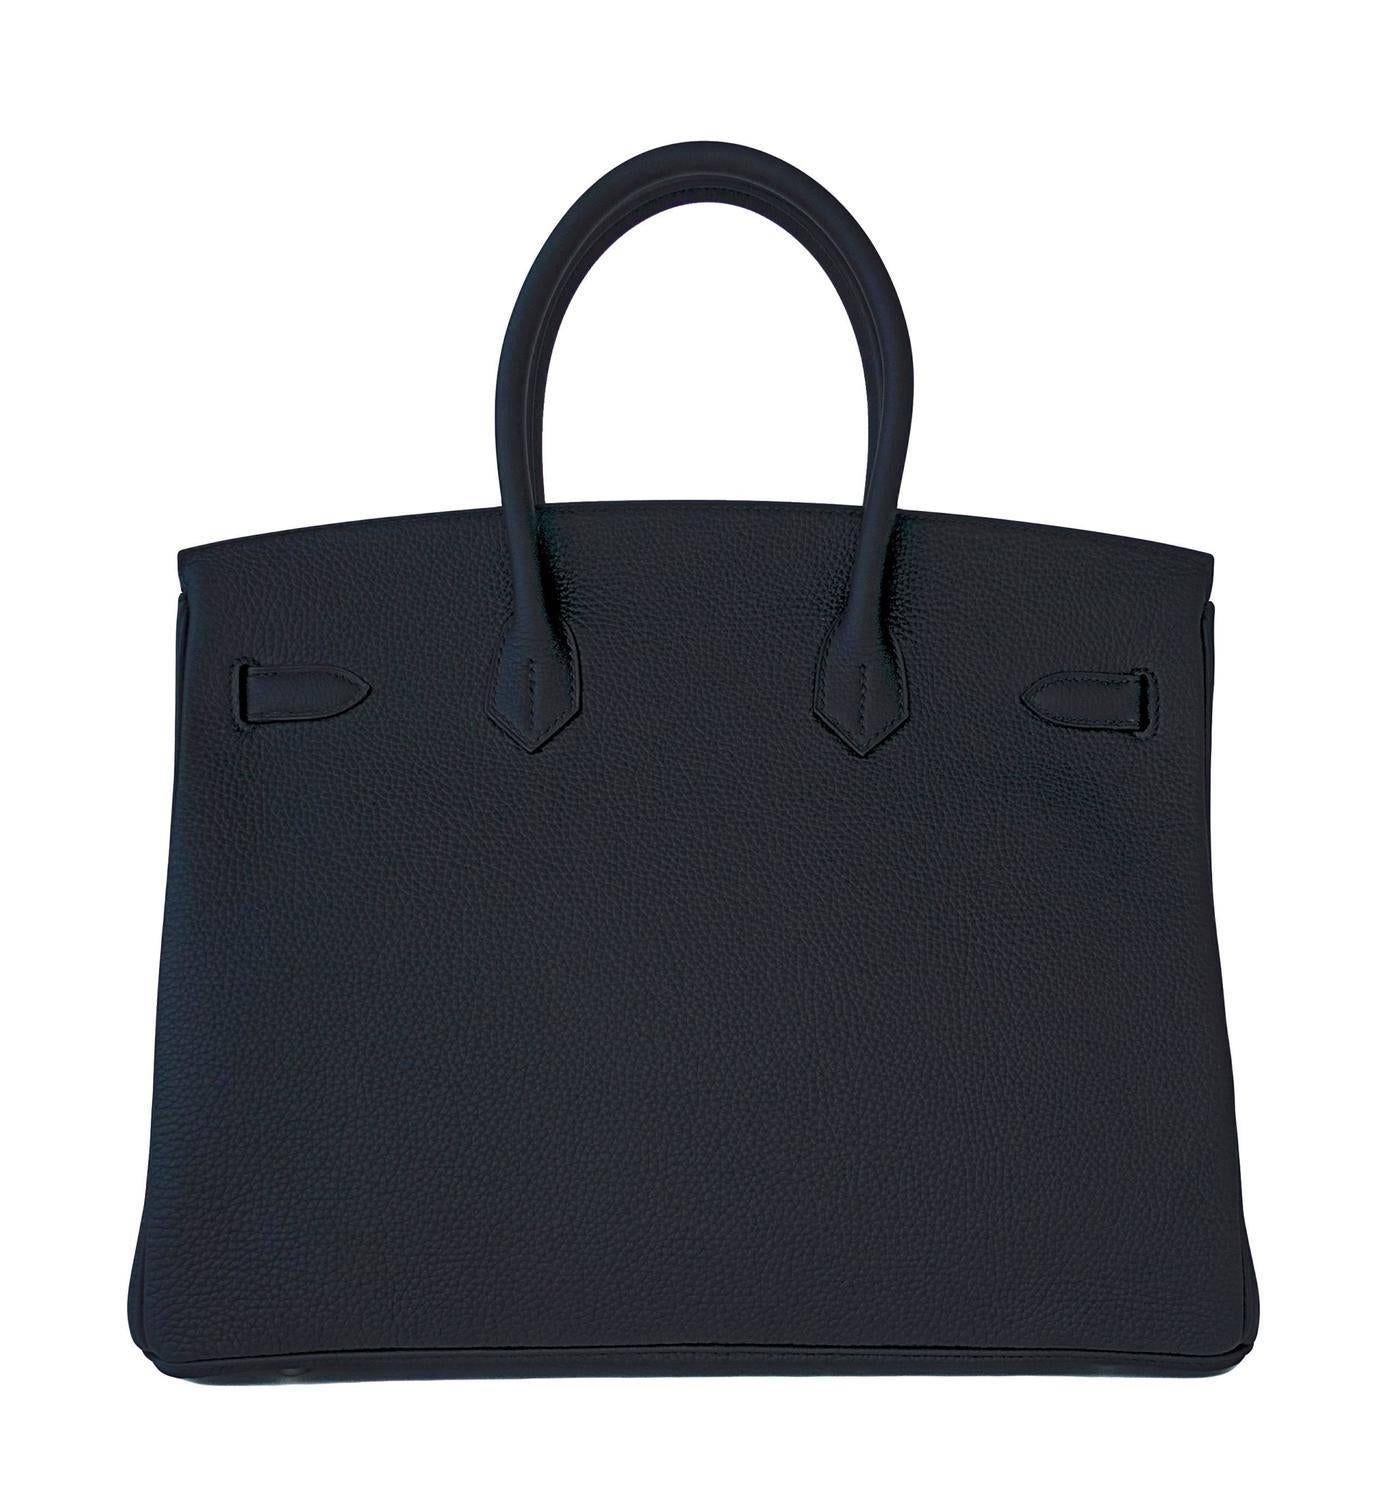 Hermes Birkin 35cm schwarze Togo Palladium Hardware Tasche für Damen oder Herren